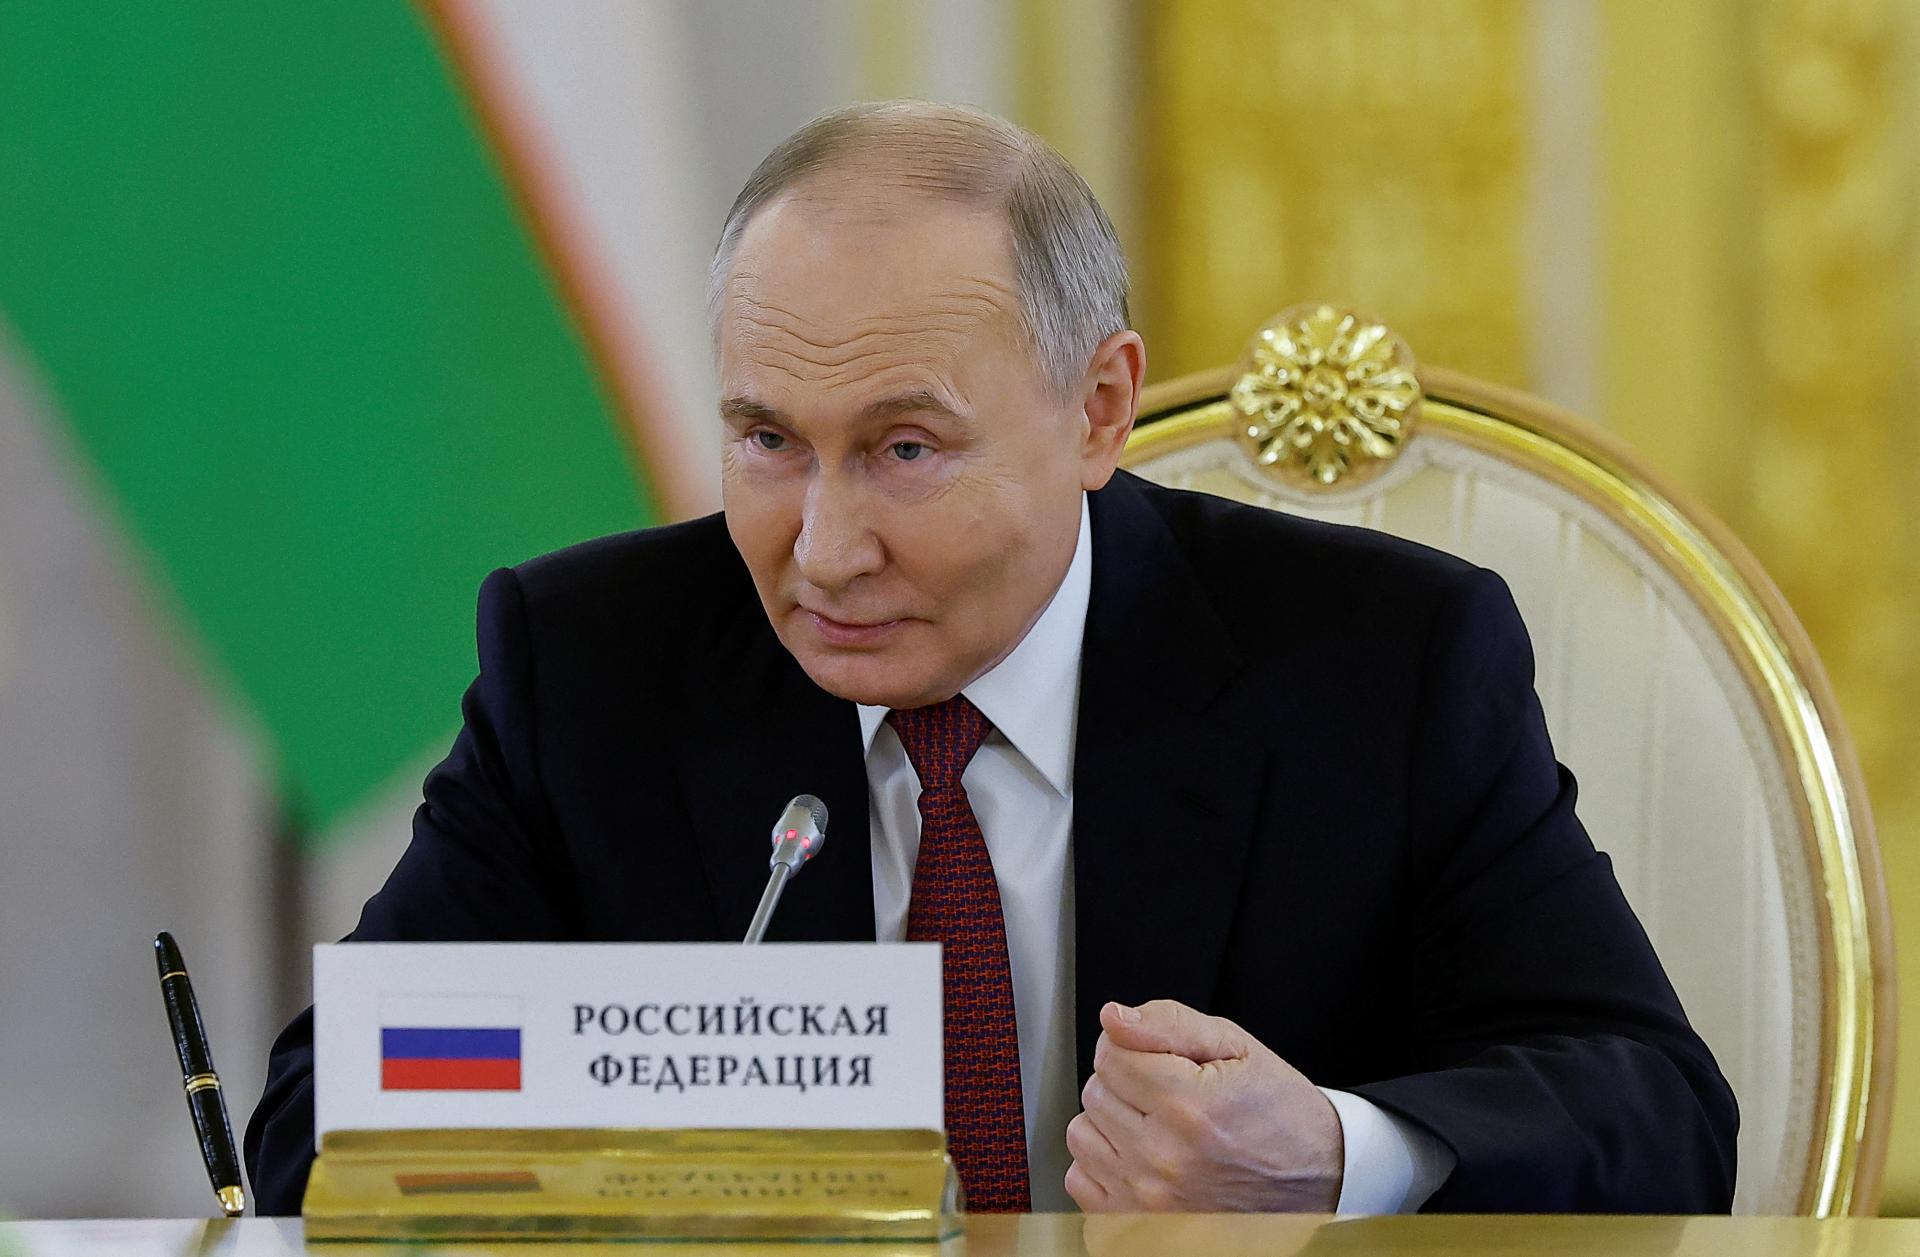 Zmeny v Kremli: Šojgu by mal skončiť ako minister obrany, Putin ho chce nahradiť